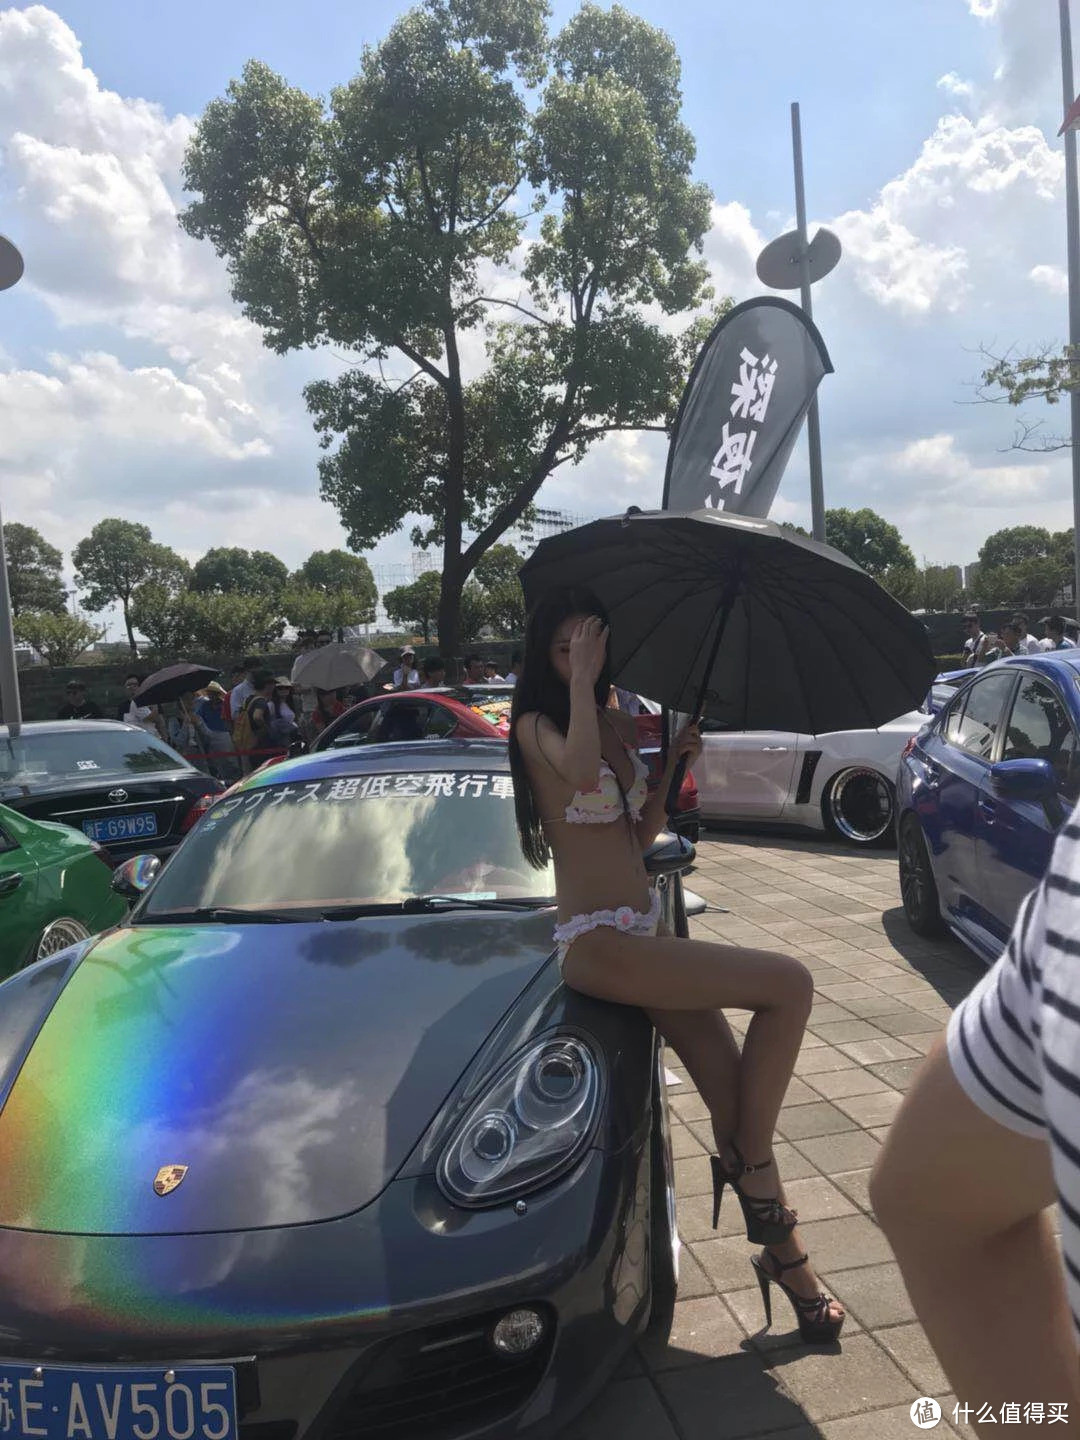 世界*级赛车+比基尼是怎样的视听盛宴？2018 上海 CHINAGT z走马观花记